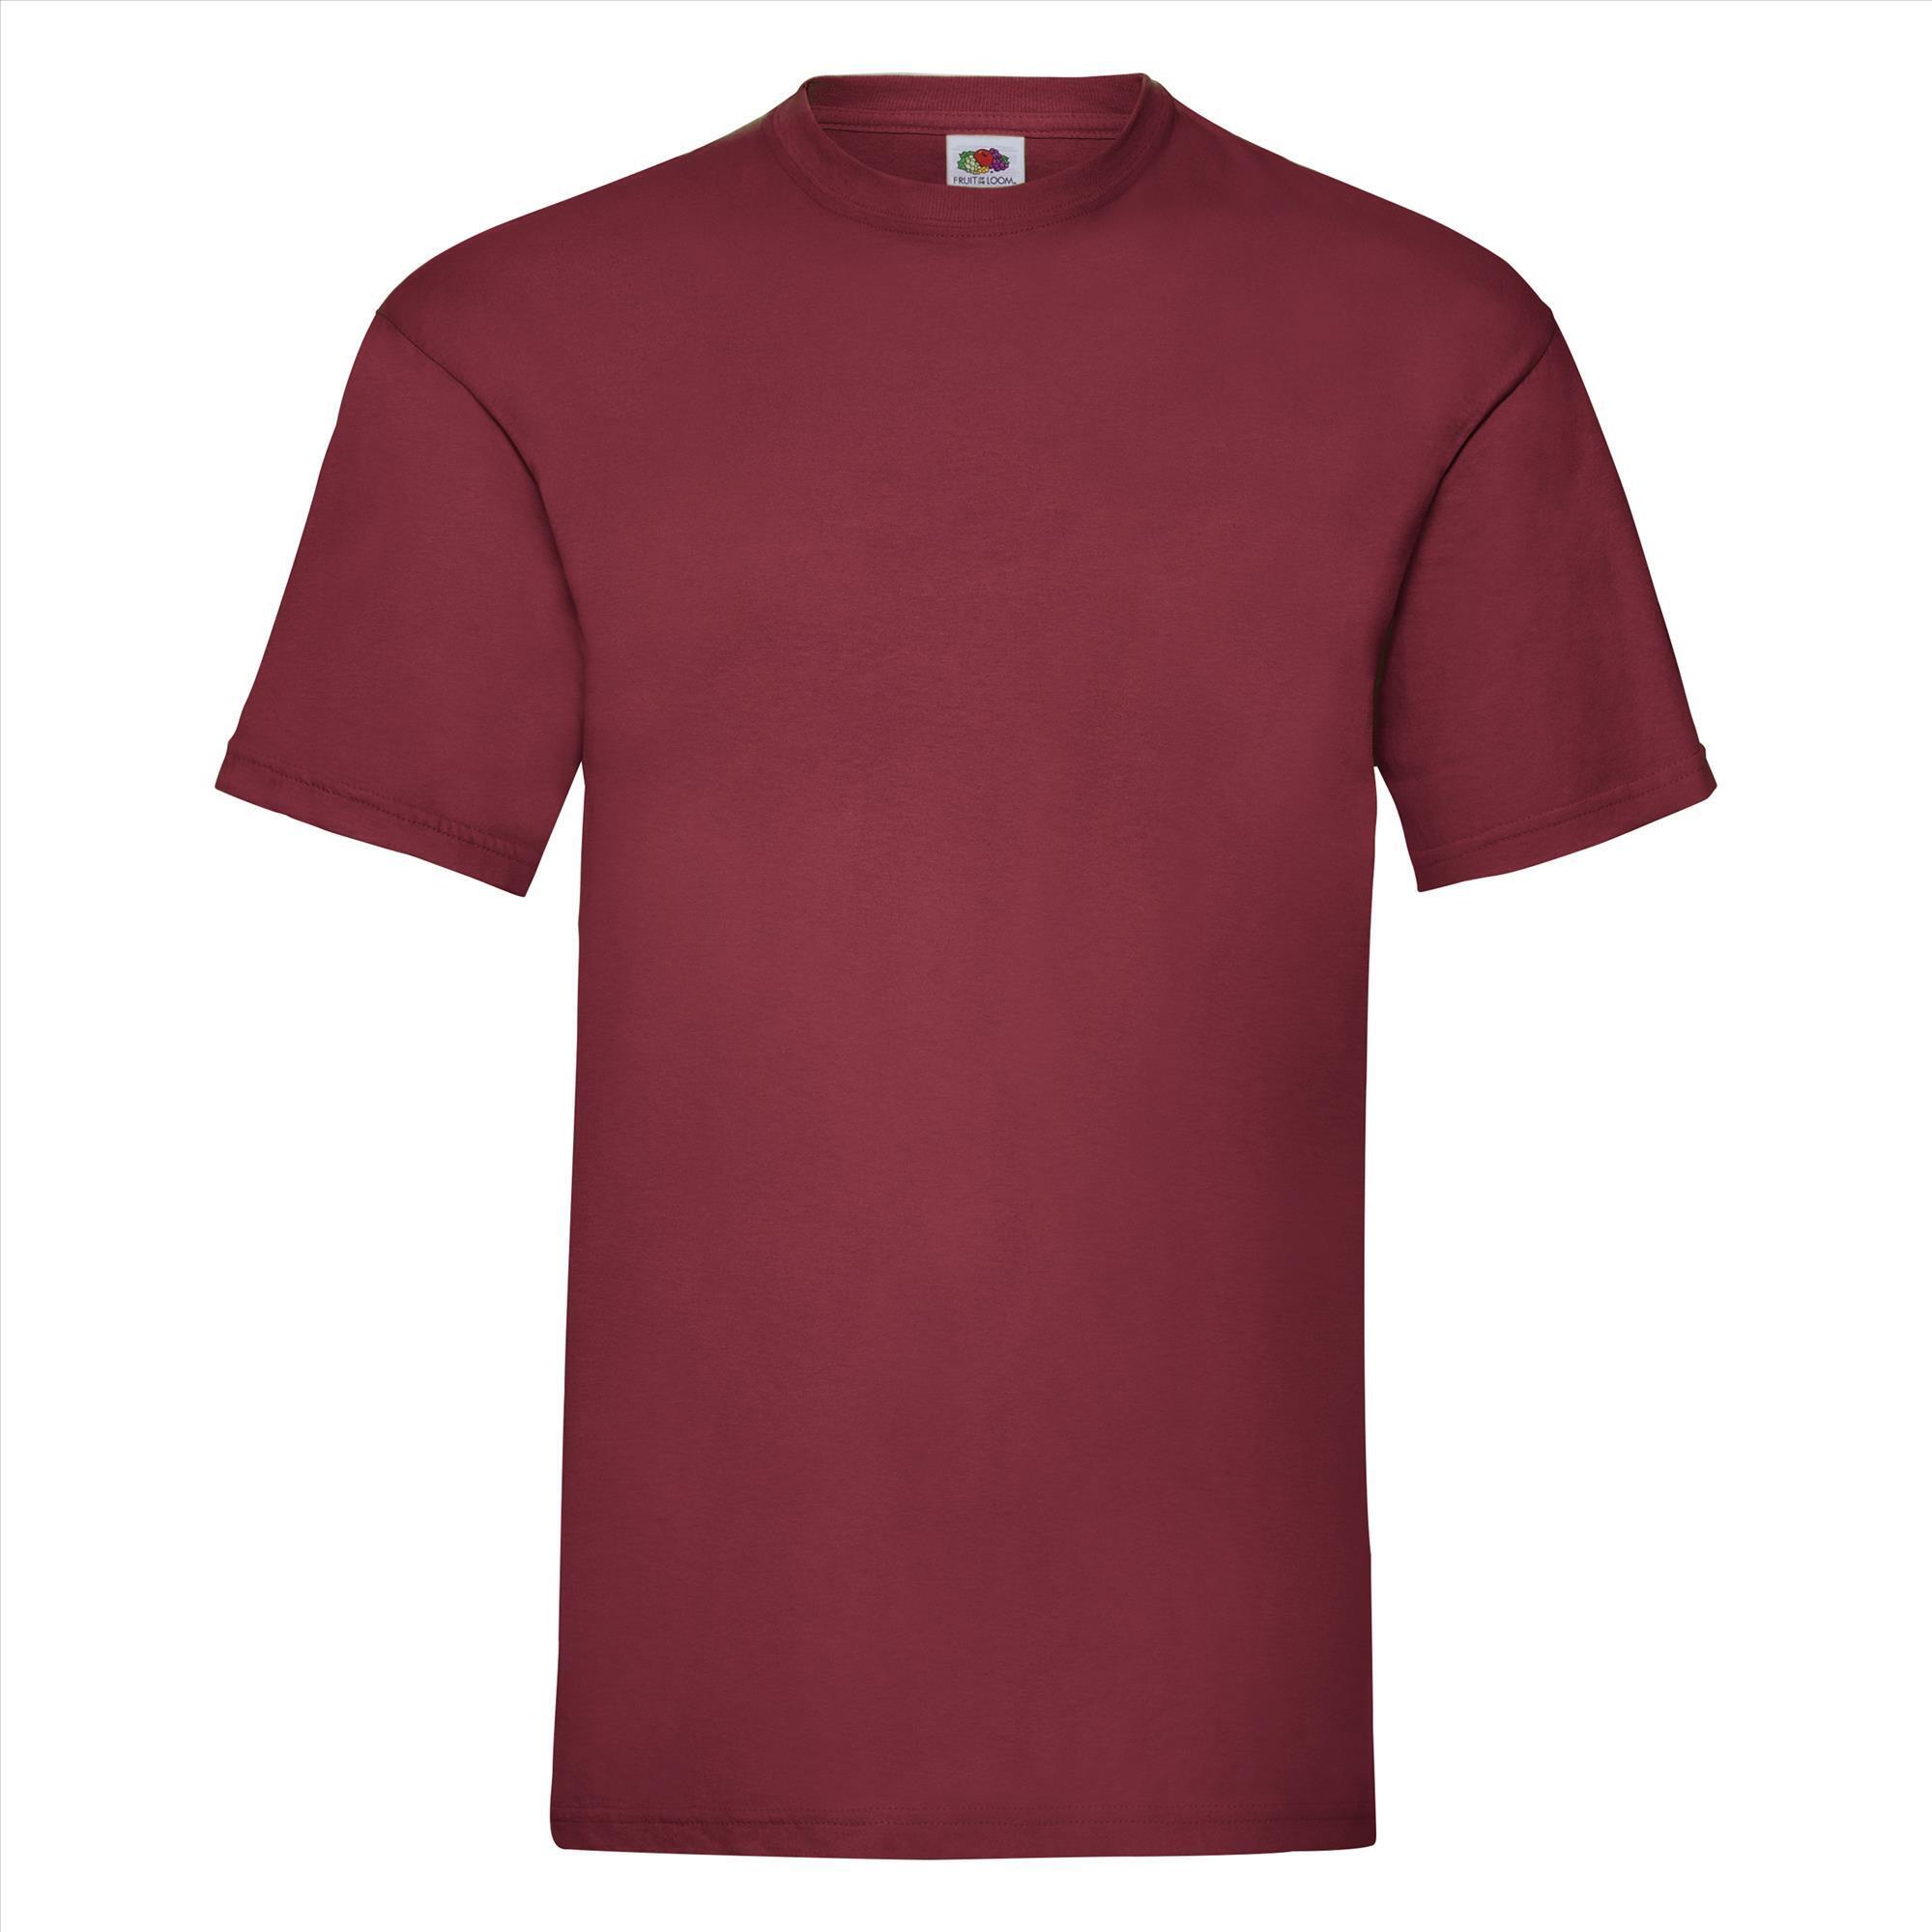 T-shirt voor mannen baksteenrood personaliseren T-shirt bedrukken